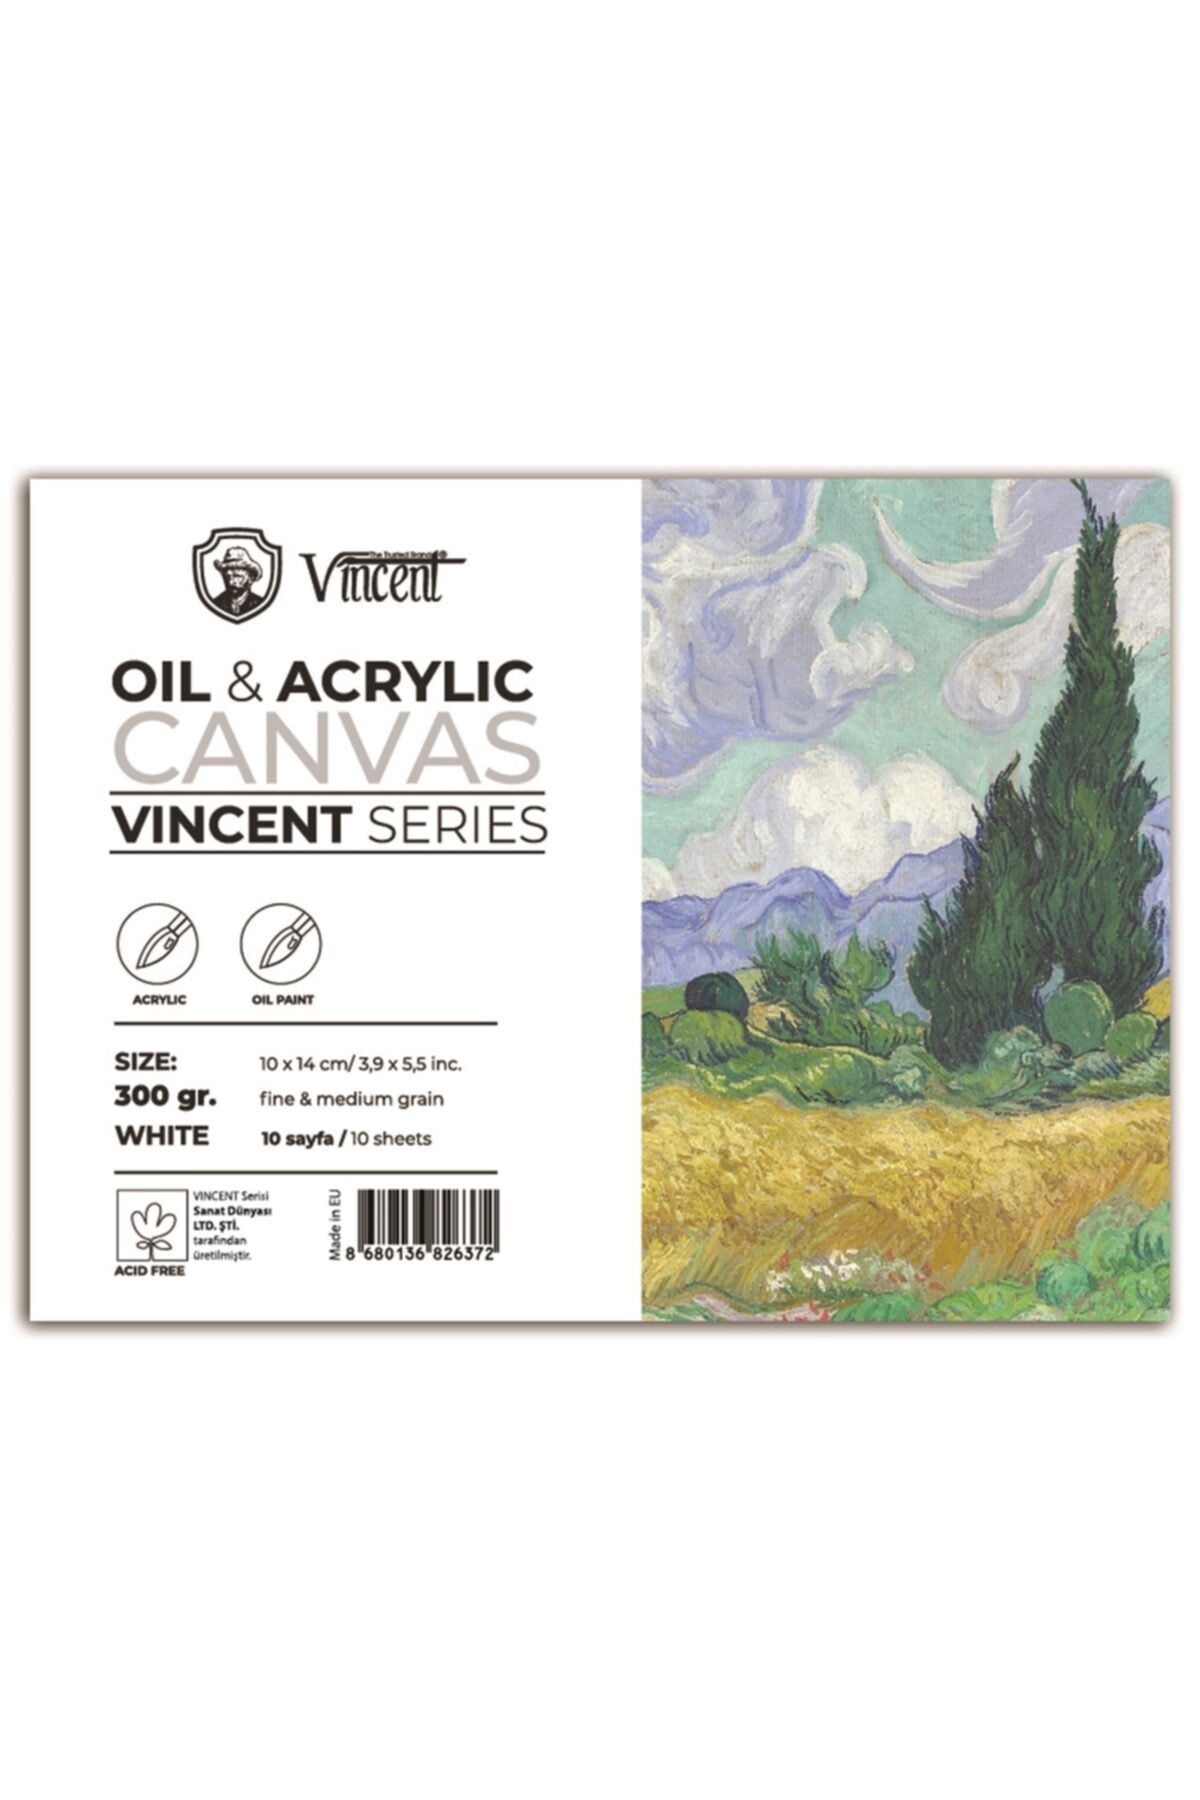 Vincent Vıncent Oıl&acrylıc Canvas 300gr 10cmx14cm 10 Sayfa Yağlı Ve Akrilik Boya Defteri